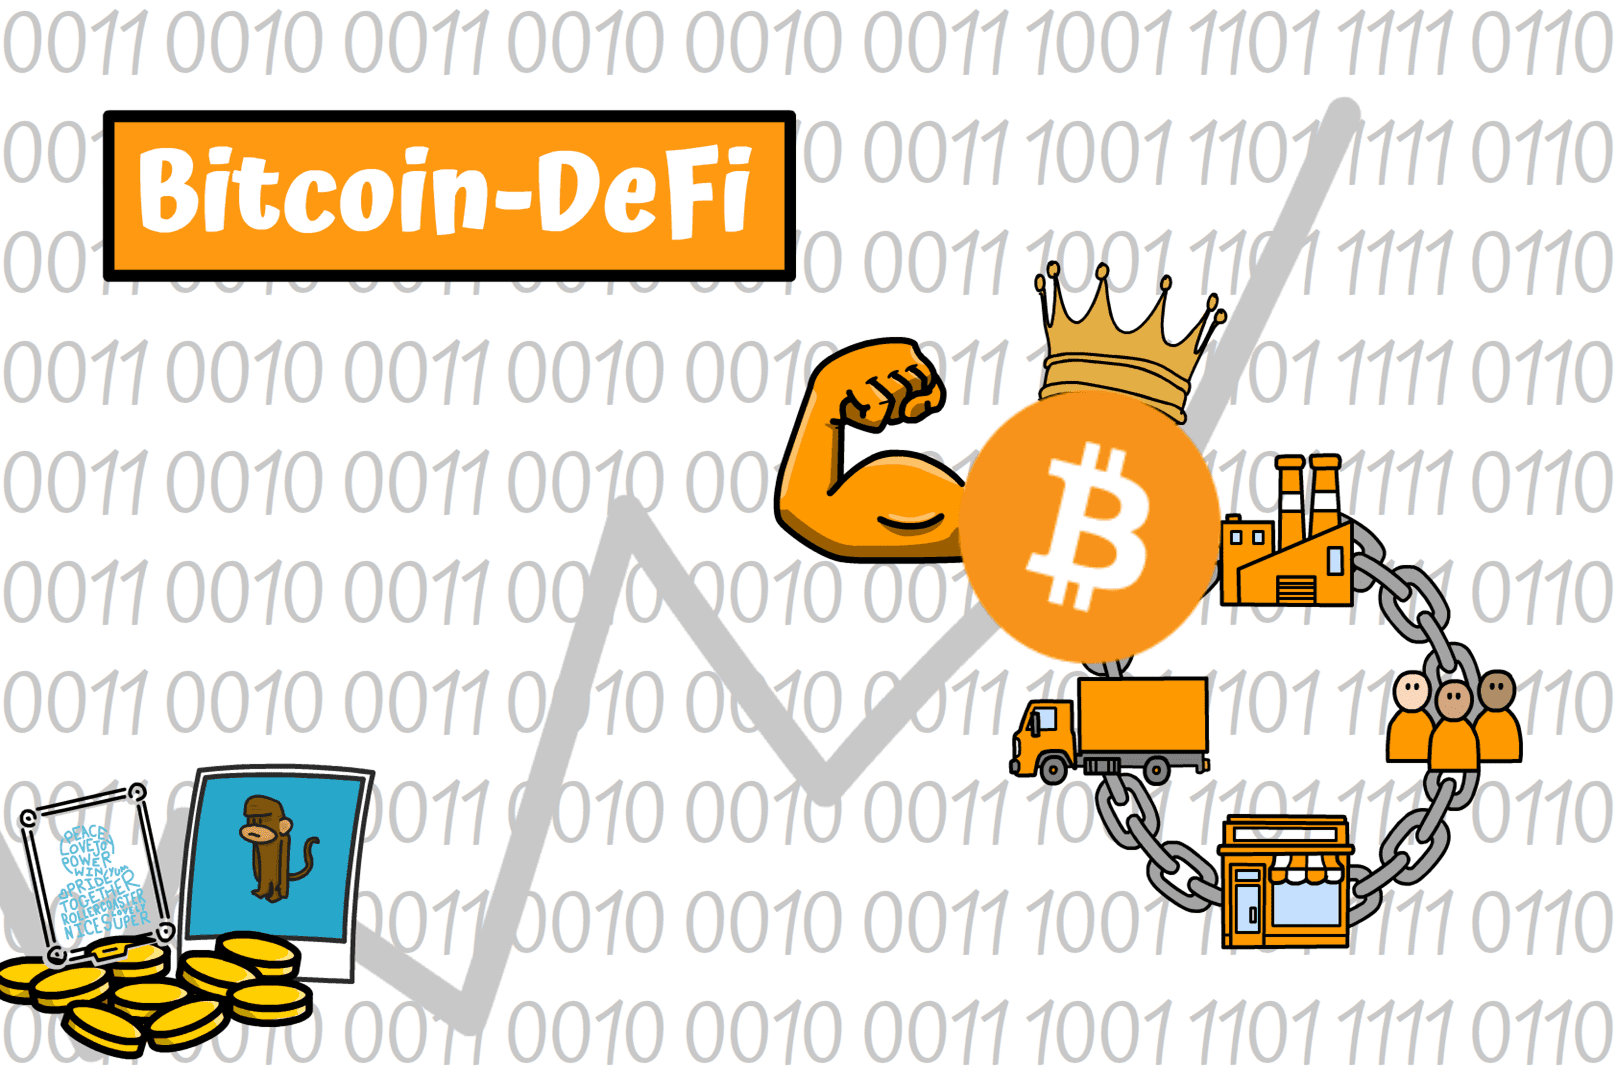 Titelbild zur Bitcoin-DeFi Narrative